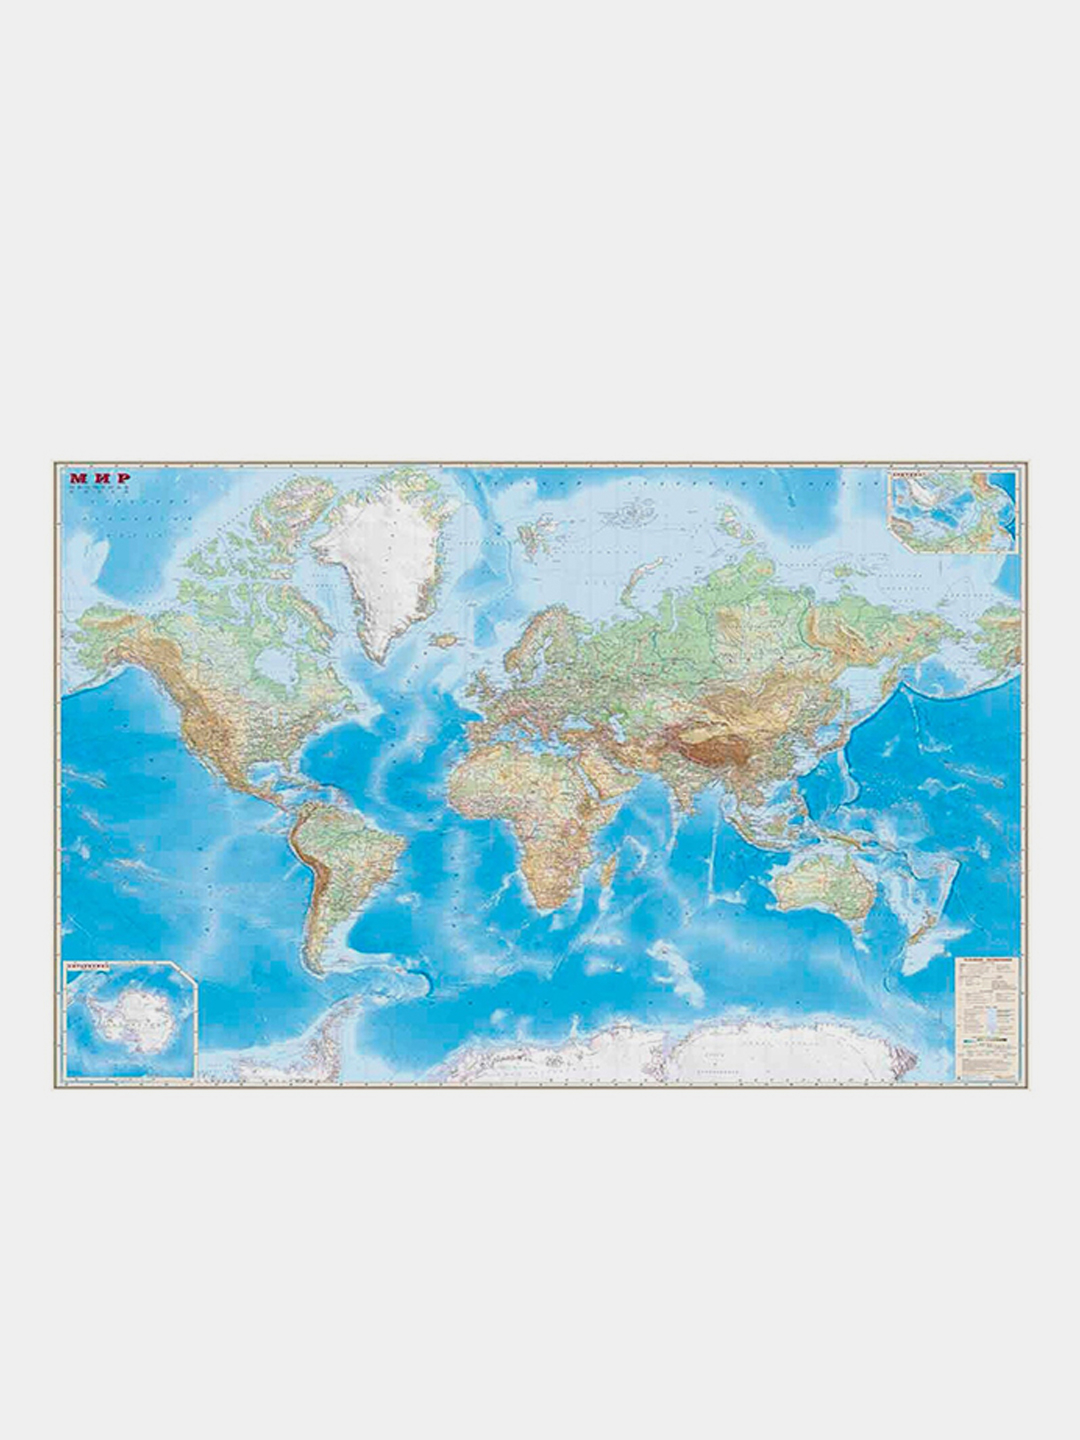 Карта Мира обзорная, настенная. Общегеографическая. Административная.Размер 190 х 140 см. купить по цене 2115 ₽ в интернет-магазине KazanExpress